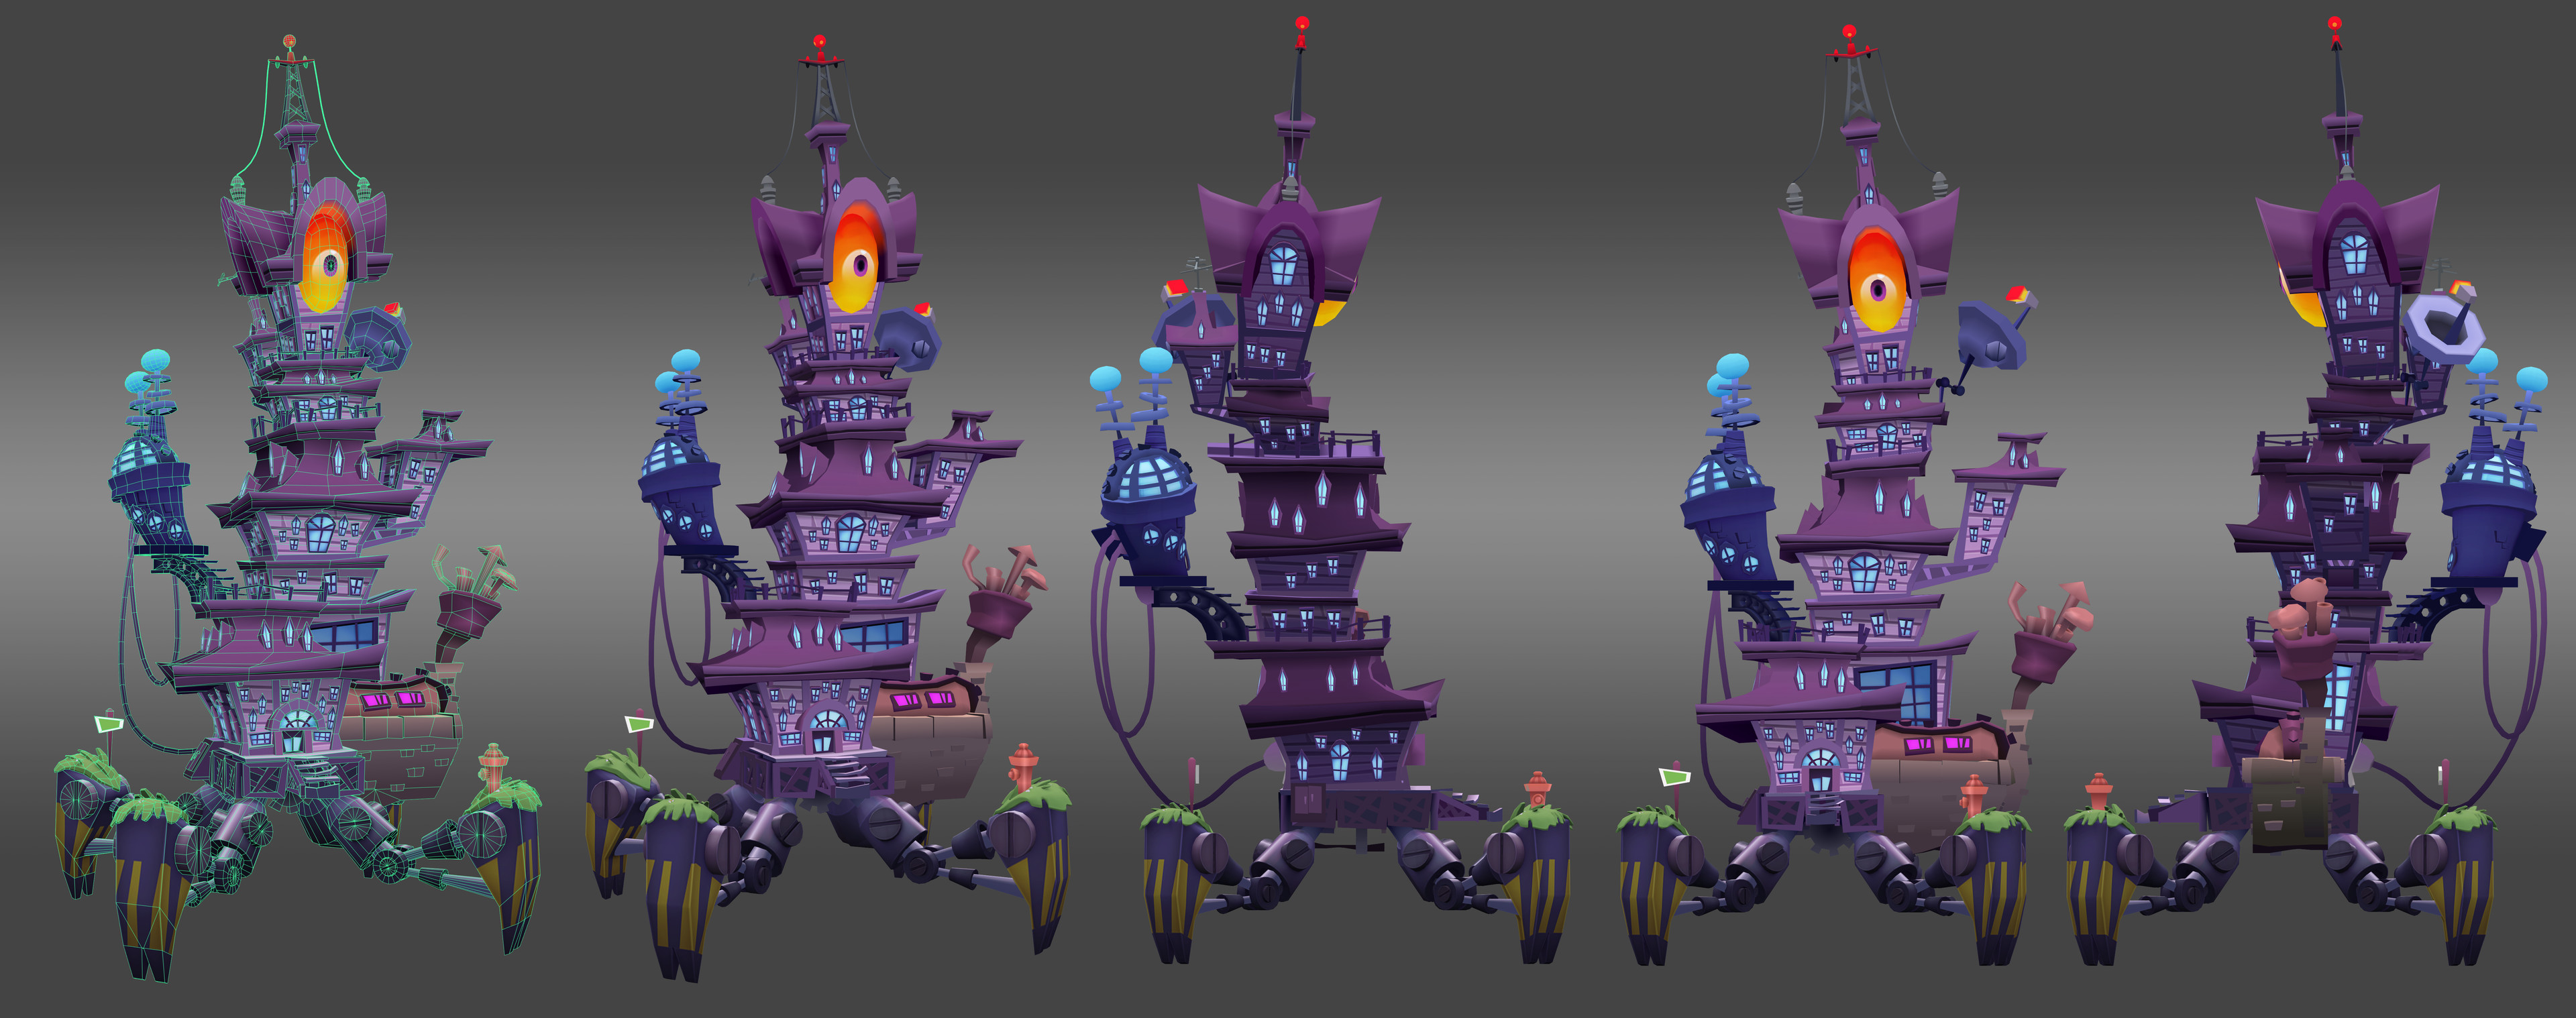 Zomboss Tower: Game asset - regular colors